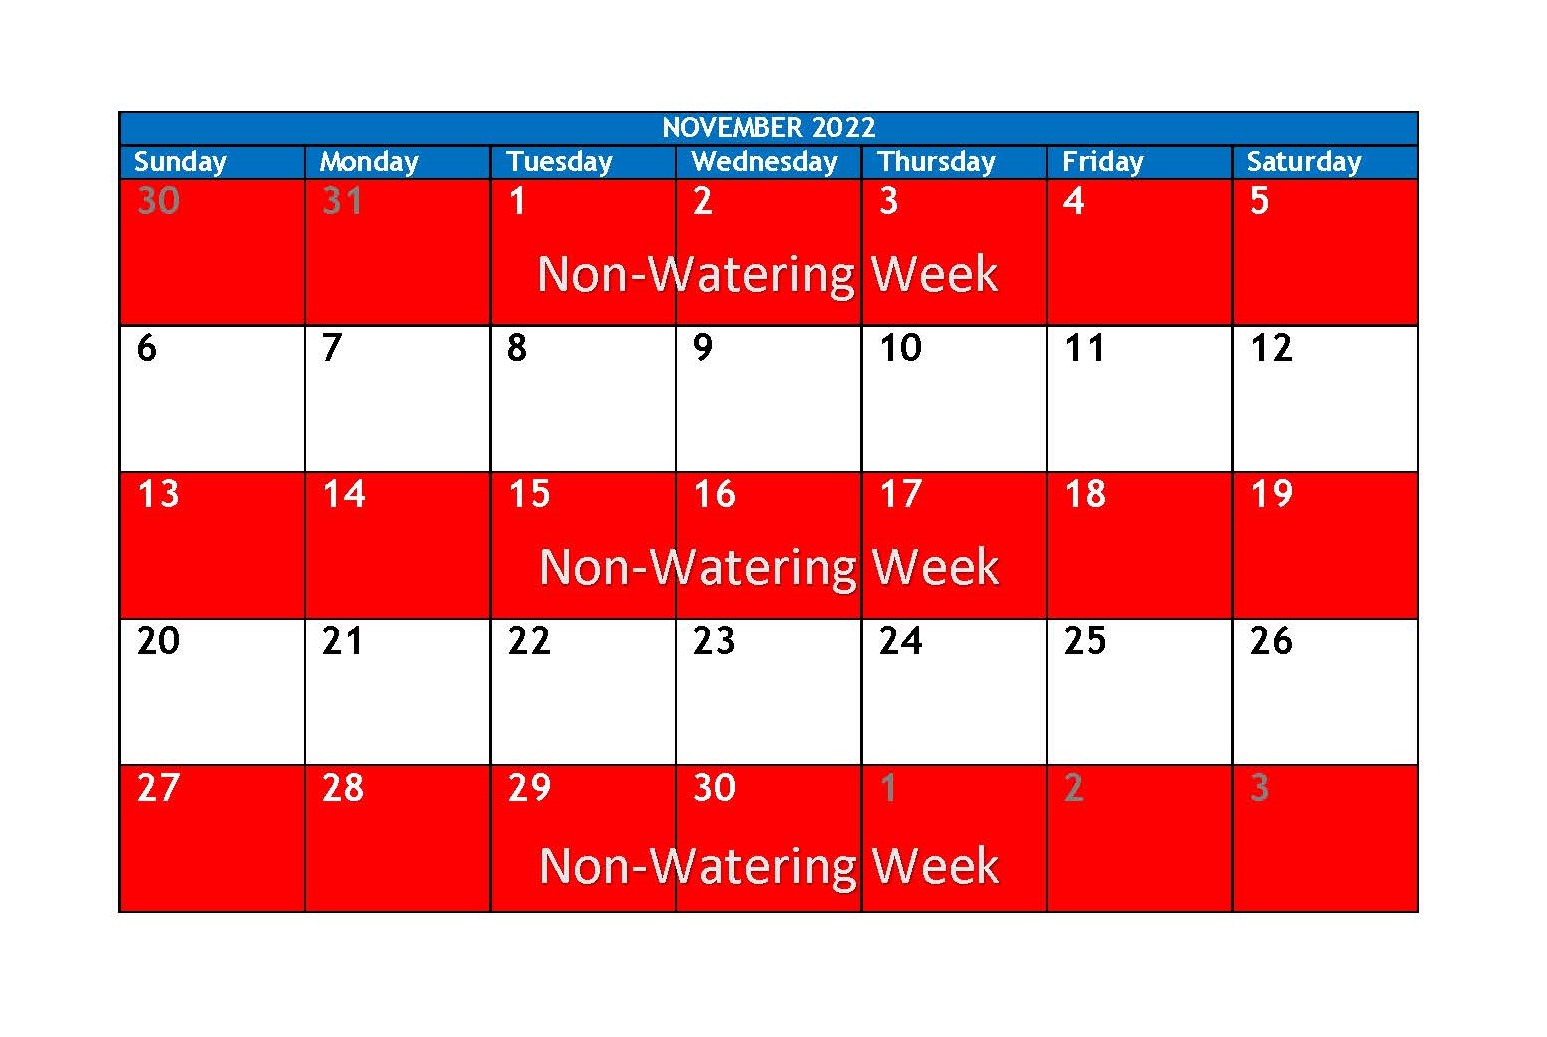 November 2022 watering schedule